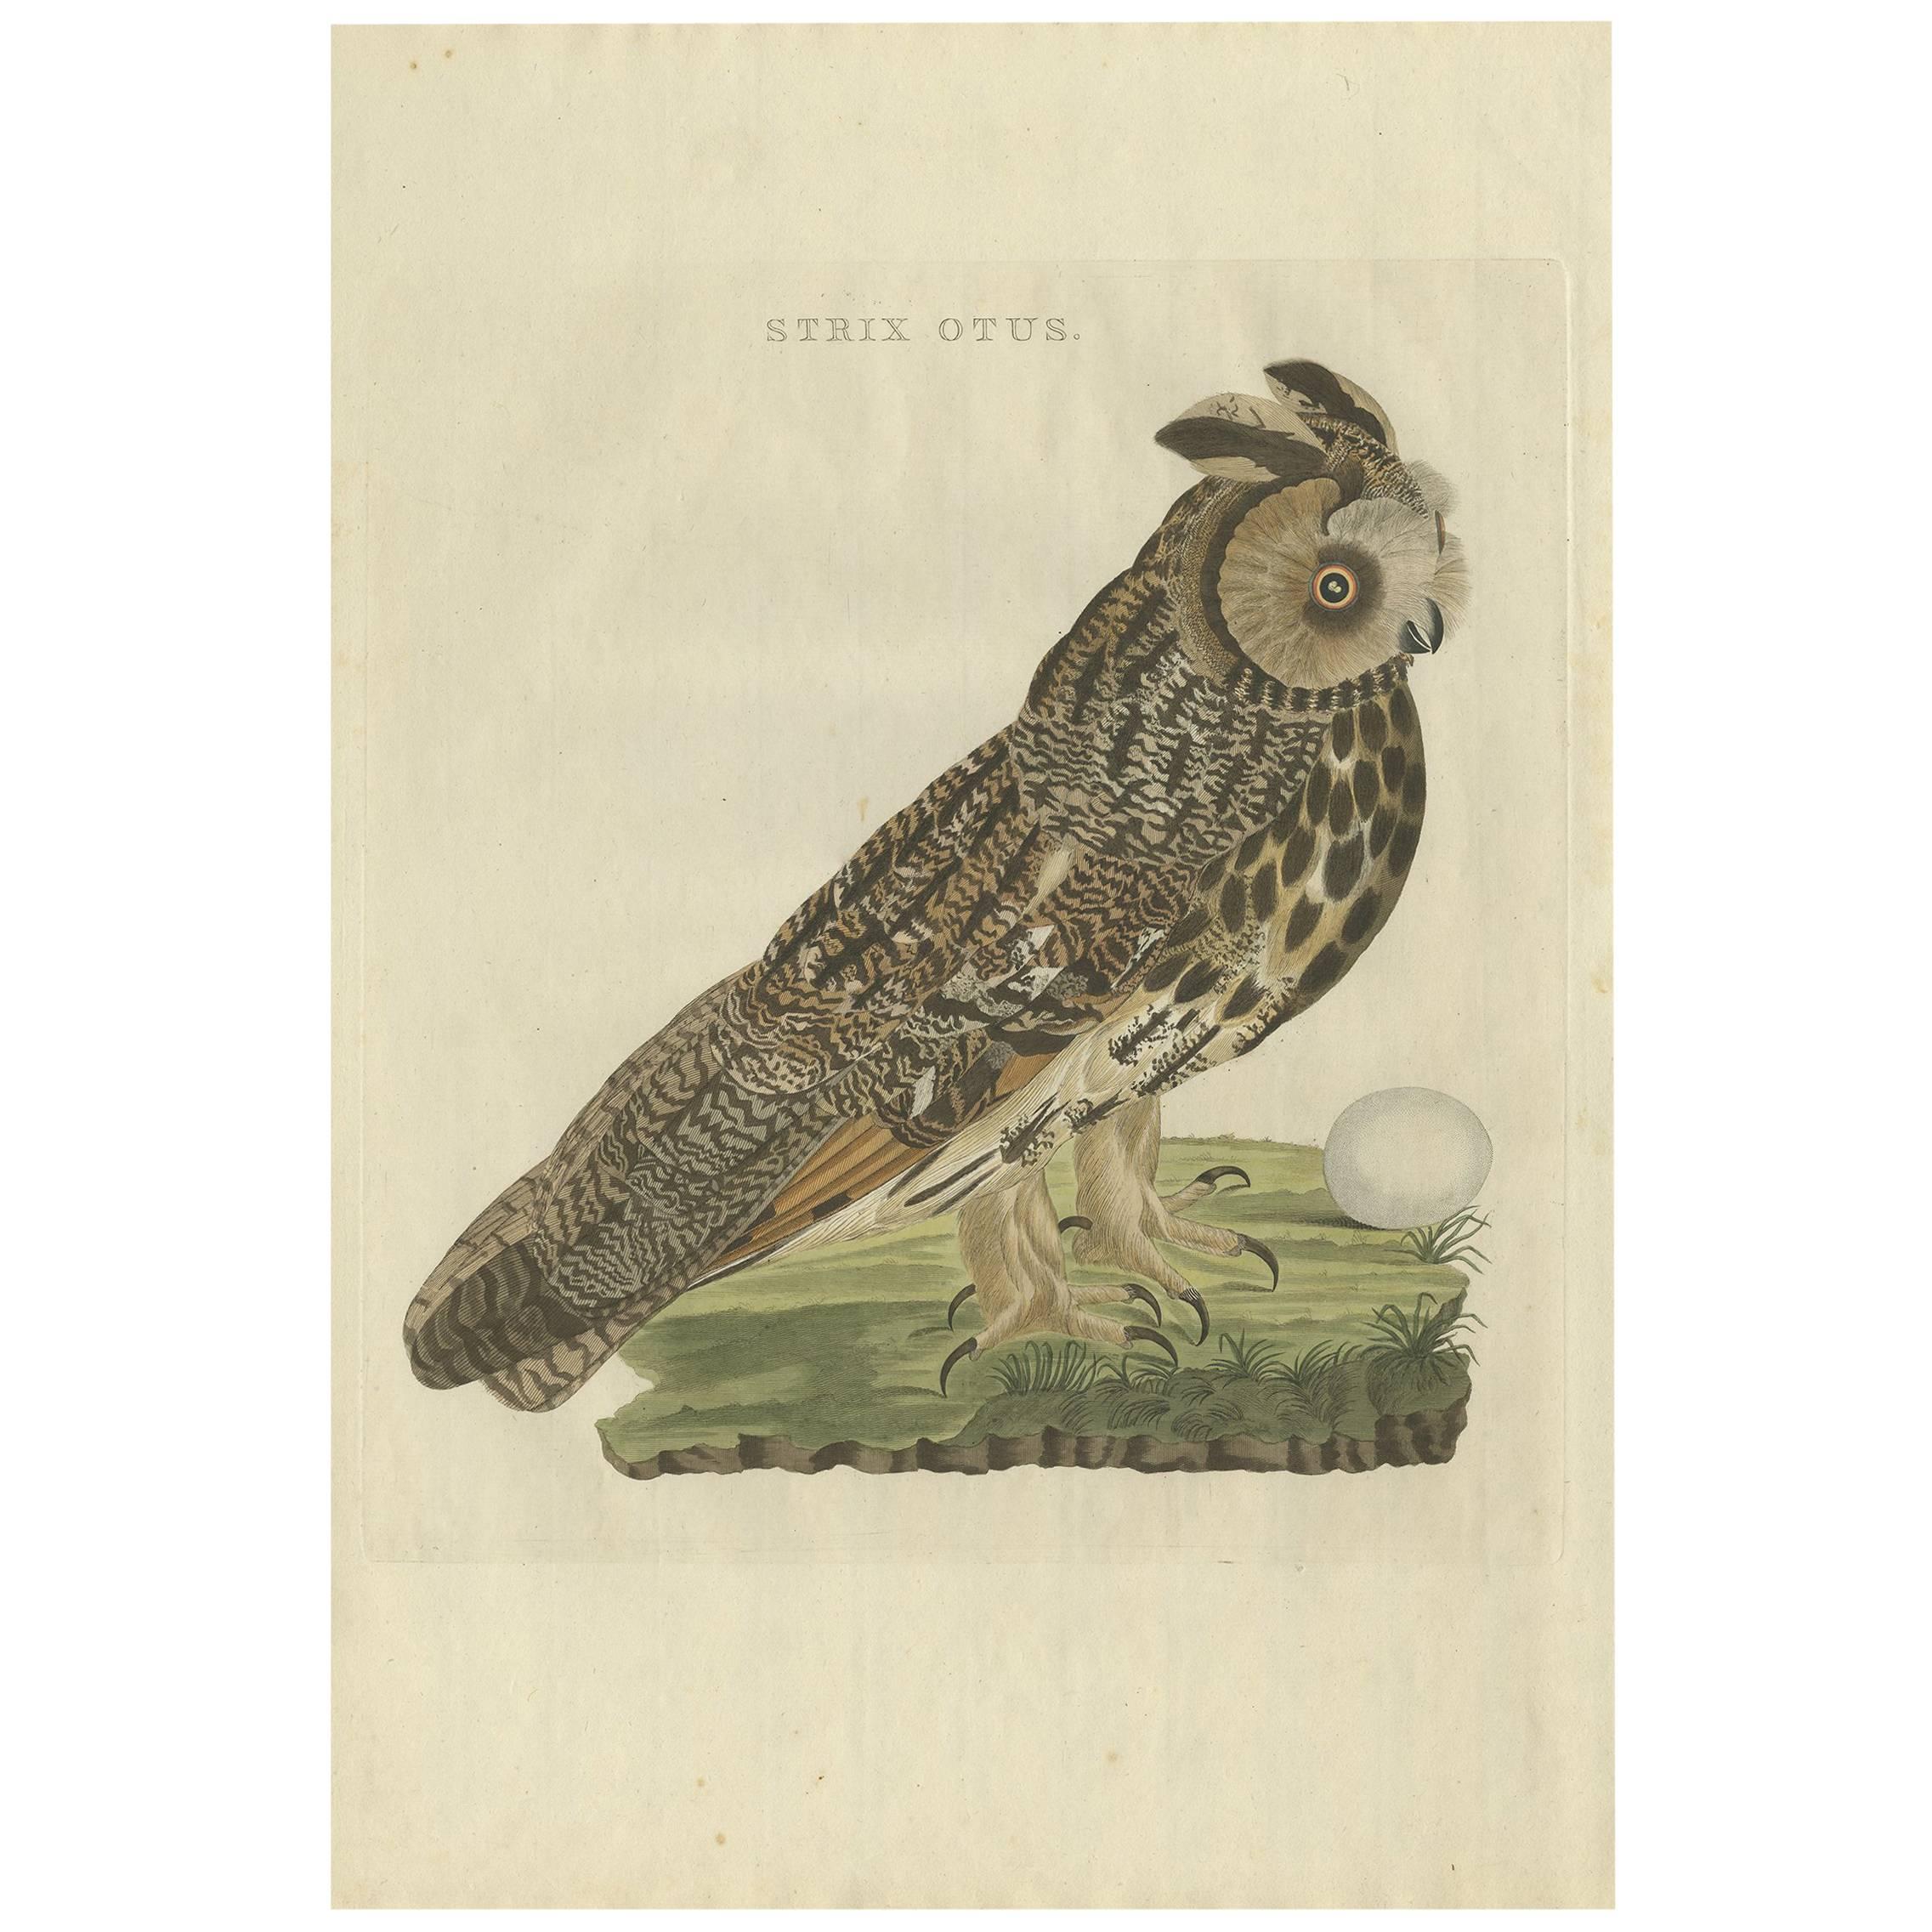 Antique Bird Print of the Long-Eared Owl by Sepp & Nozeman, 1809